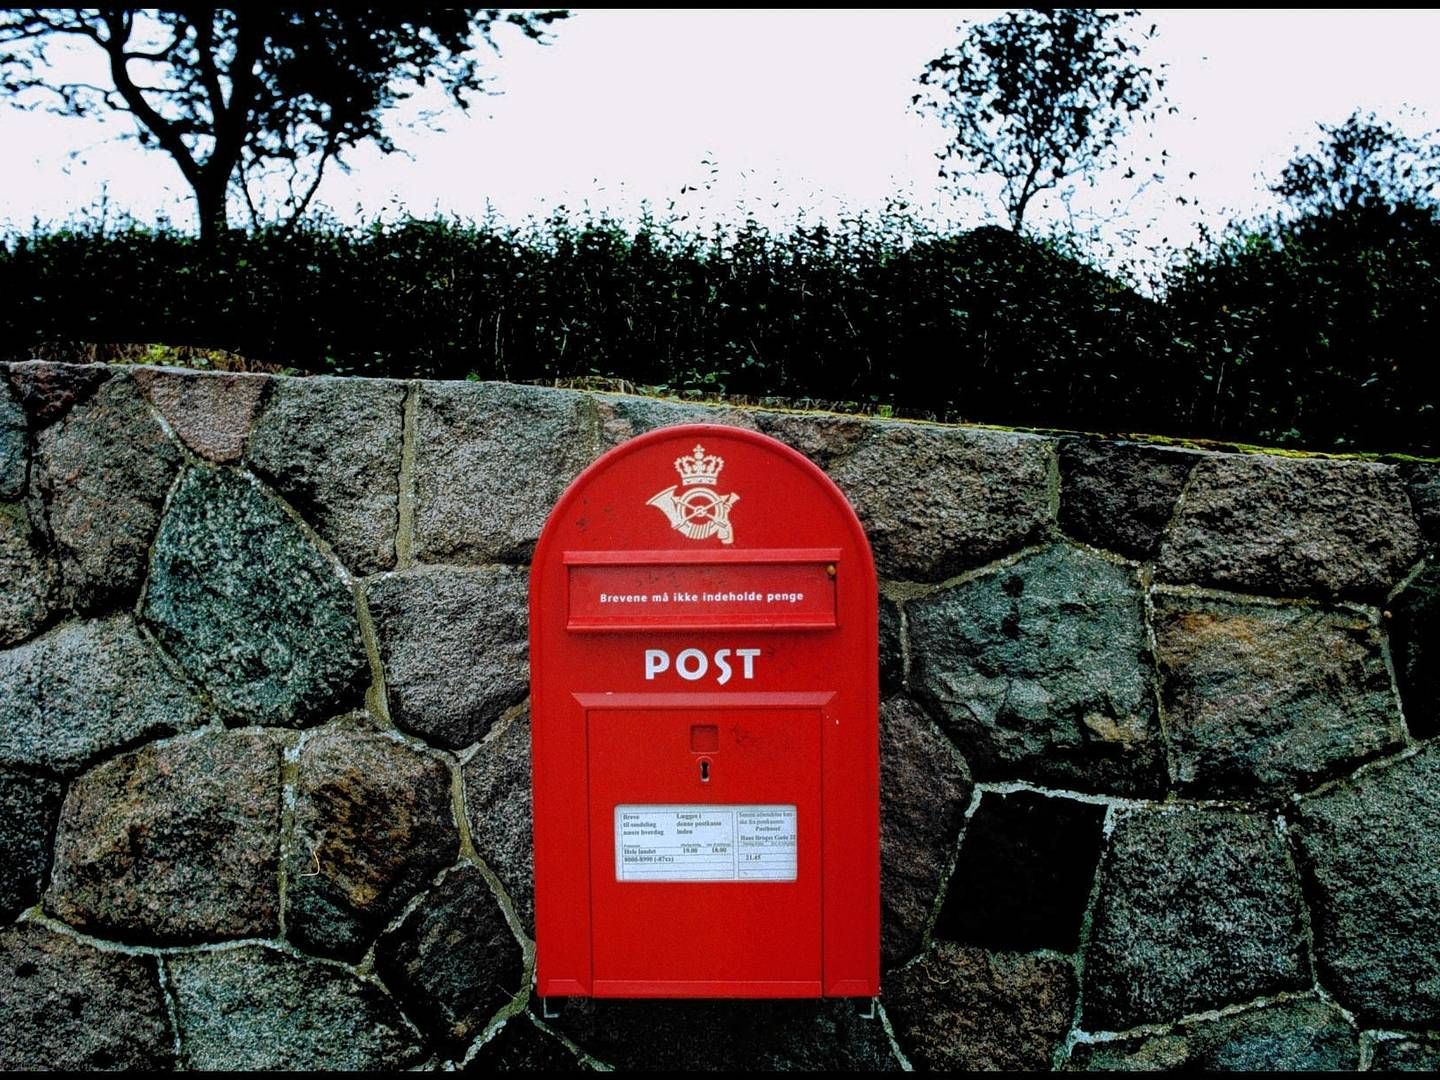 Det er på tide at slippe postmarkedet fri ved at reducere befordringspligten mest muligt, lyder det fra fire store distributionsselskaber. | Foto: Carsten Ingemann/Jyllands-Posten/Ritzau Scanpix